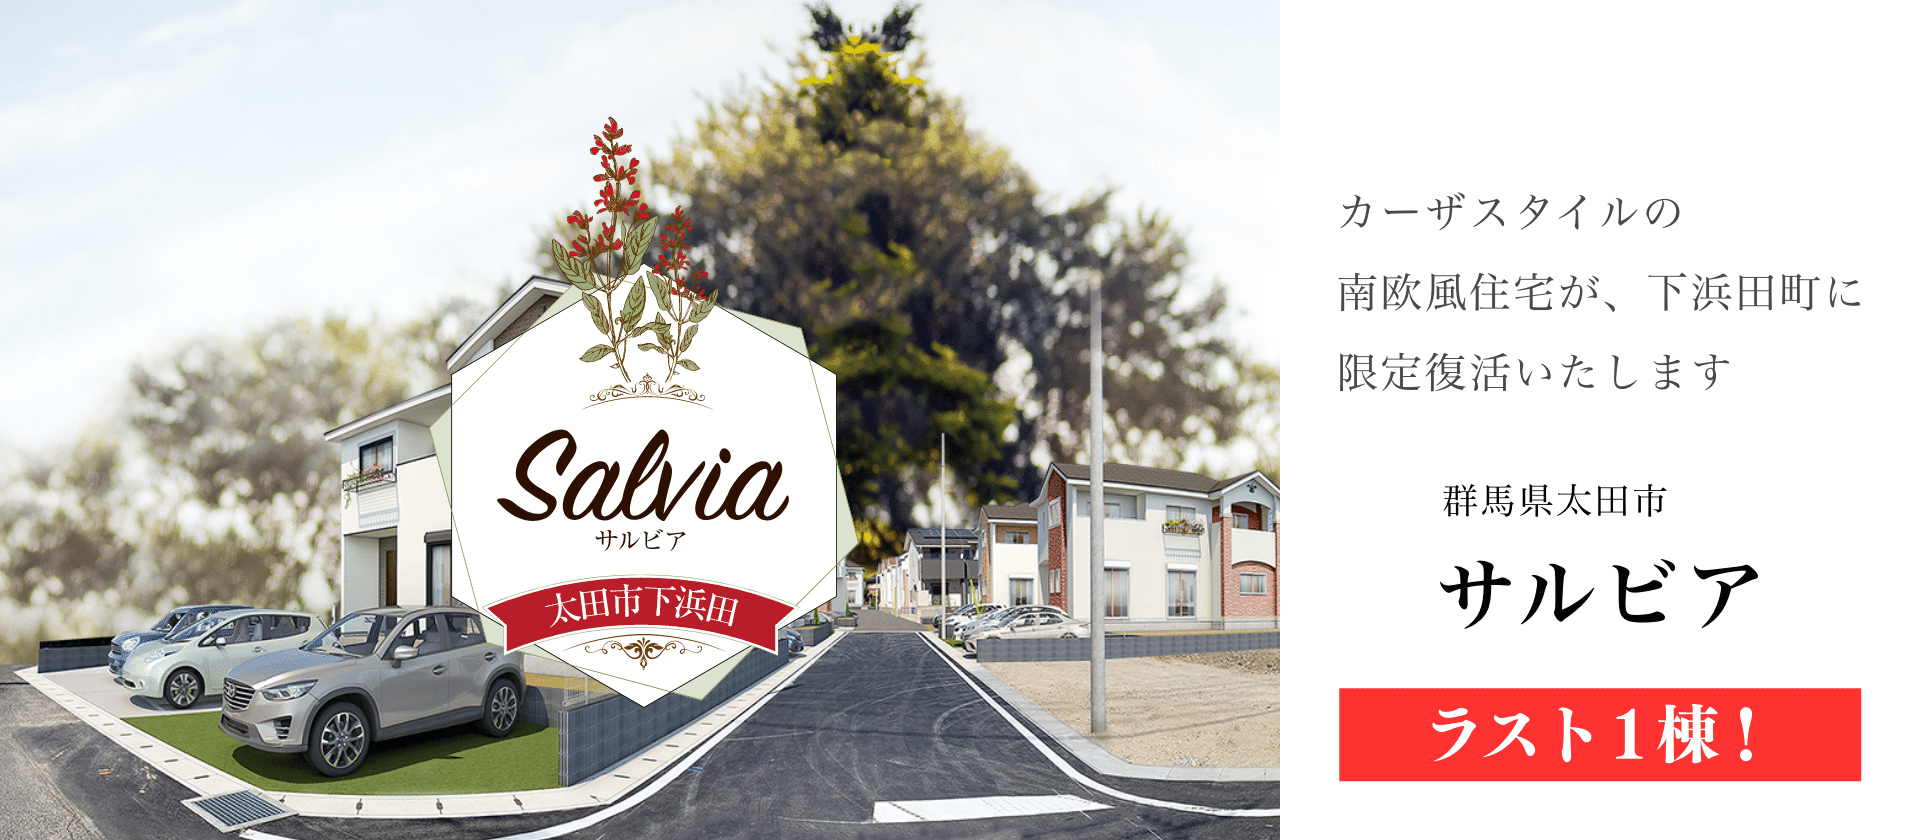 Salvia カーザスタイルの南欧風住宅が、下浜田町に限定復活いたします